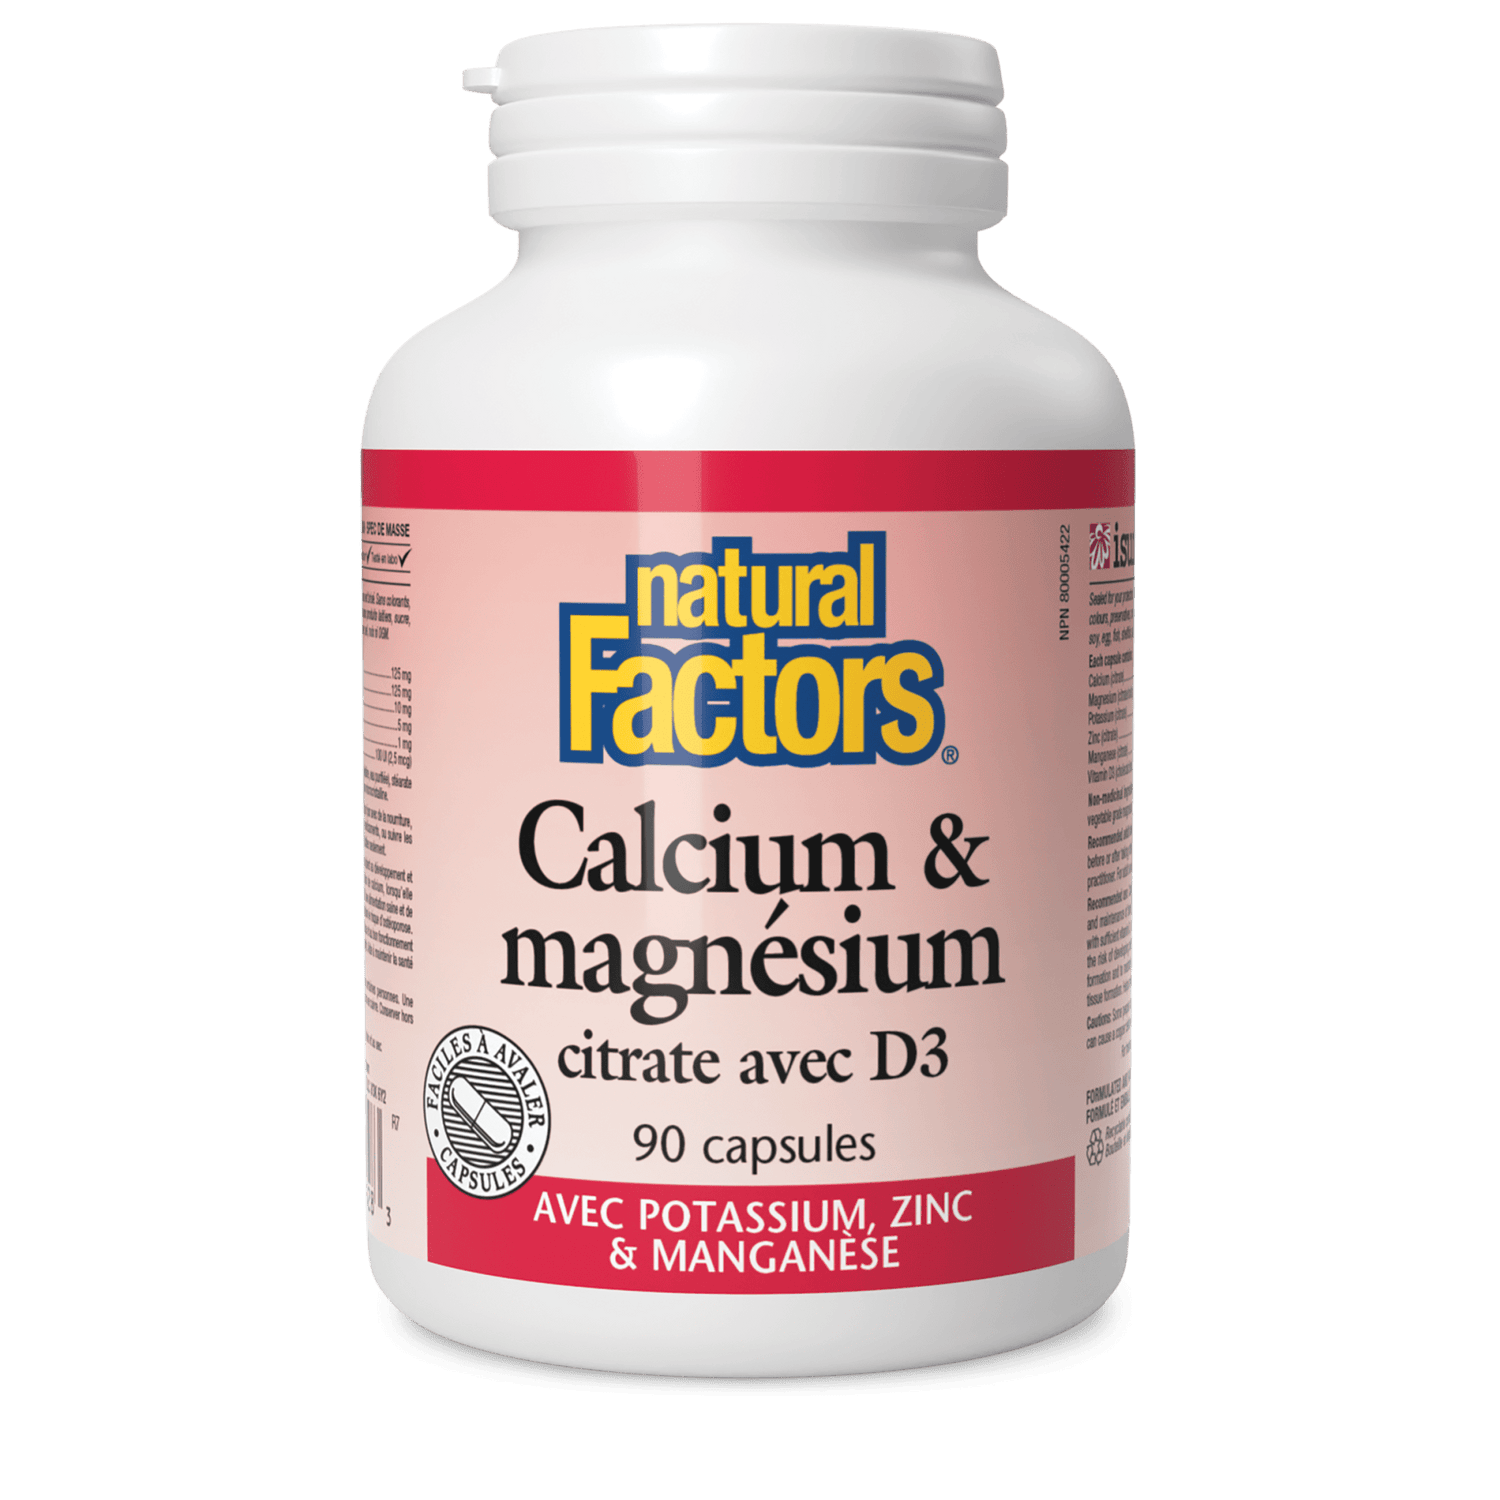 Calcium & magnésium citrate avec D3 avec potassium, zinc & manganèse, Natural Factors|v|image|1628